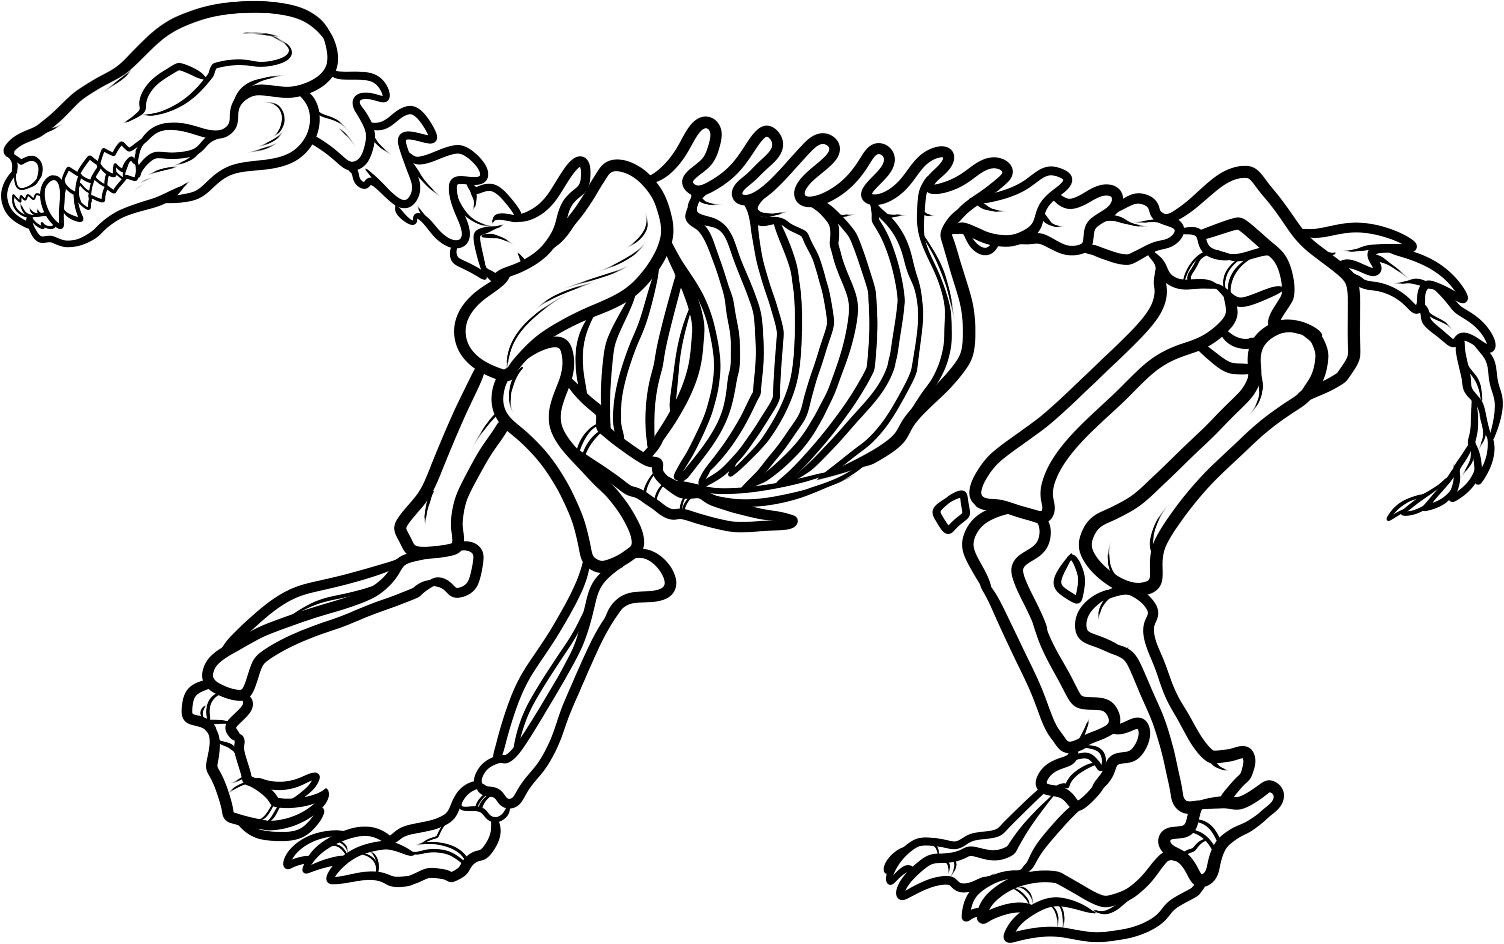 bones clipart triceratops